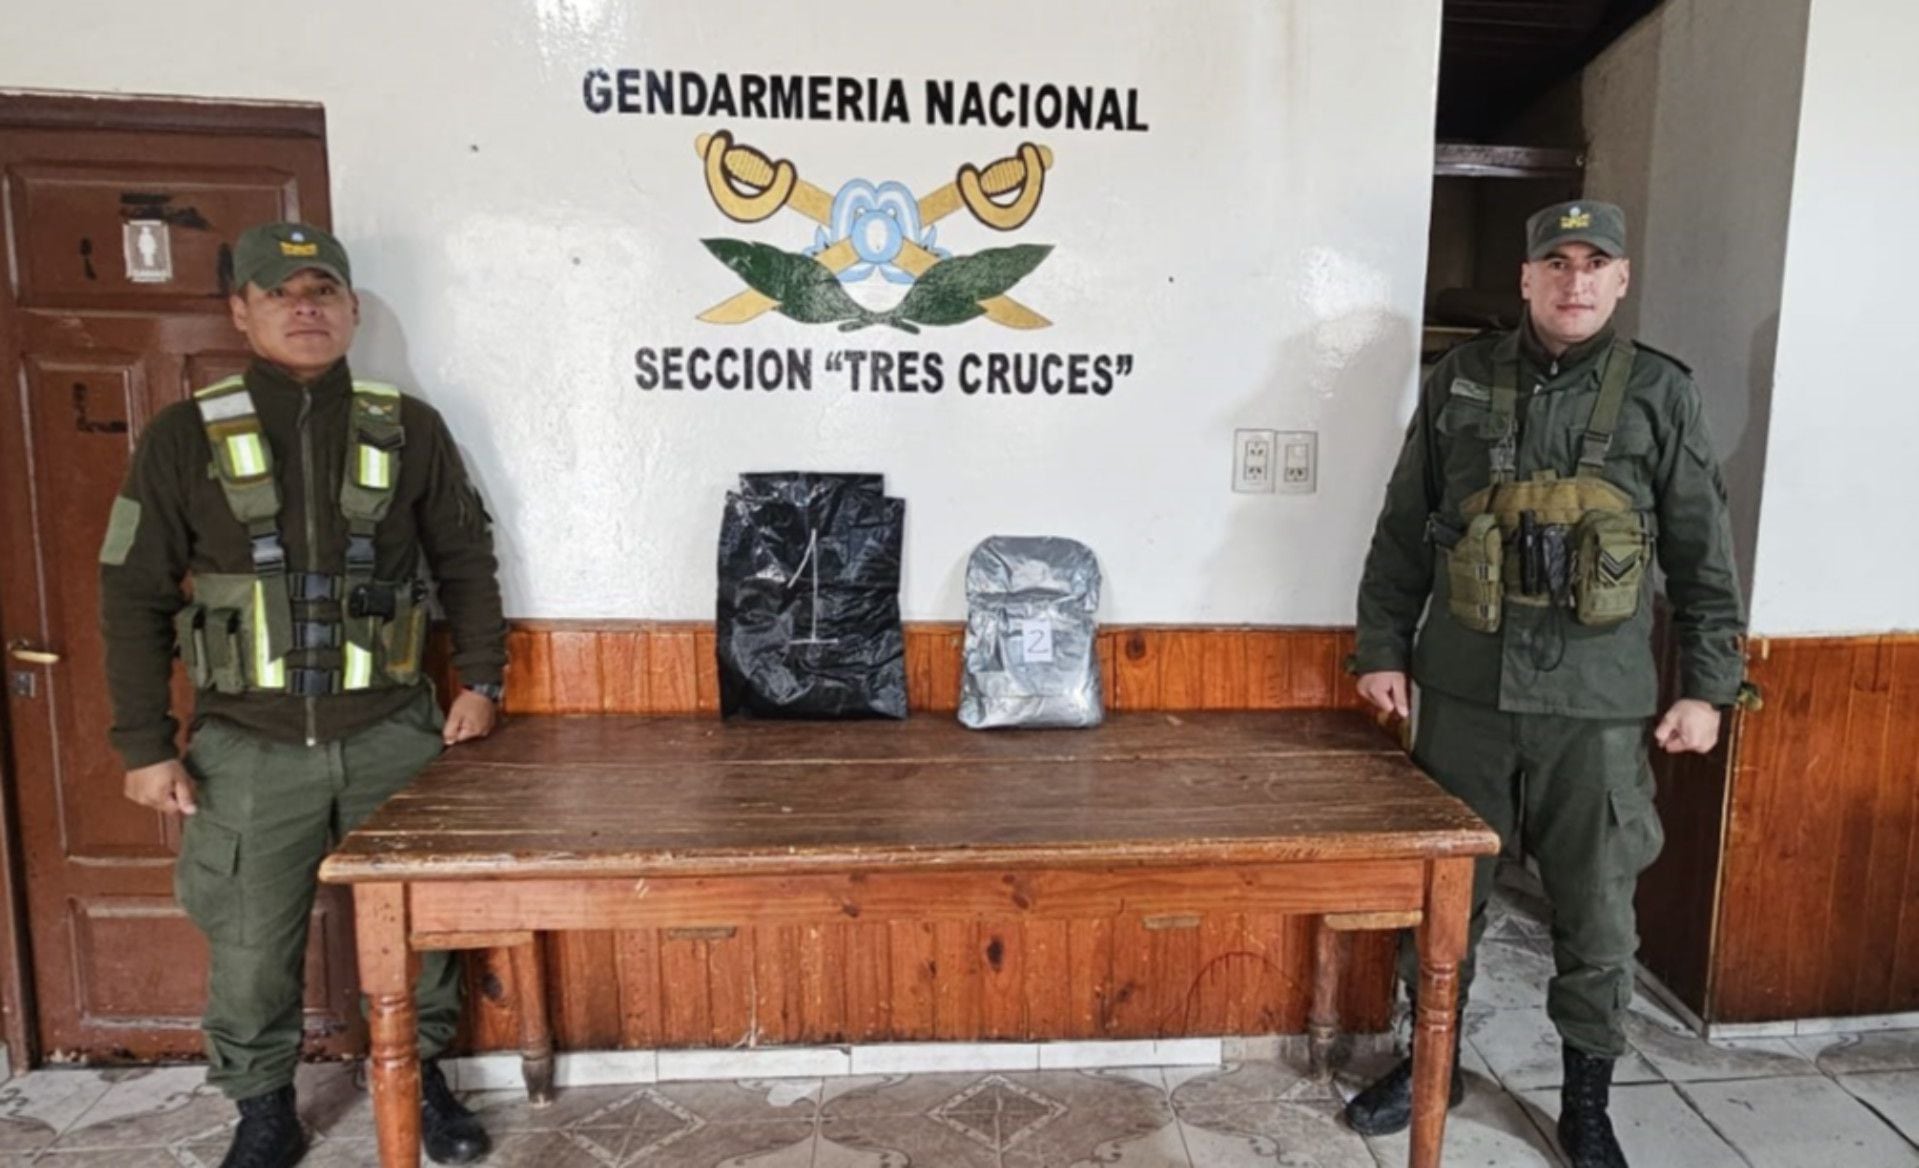 Un can antinarcóticos detectó más de 4 kilos de cocaína en el doble fondo de un equipaje de un pasajero de un ómnibus en Jujuy (GNA)